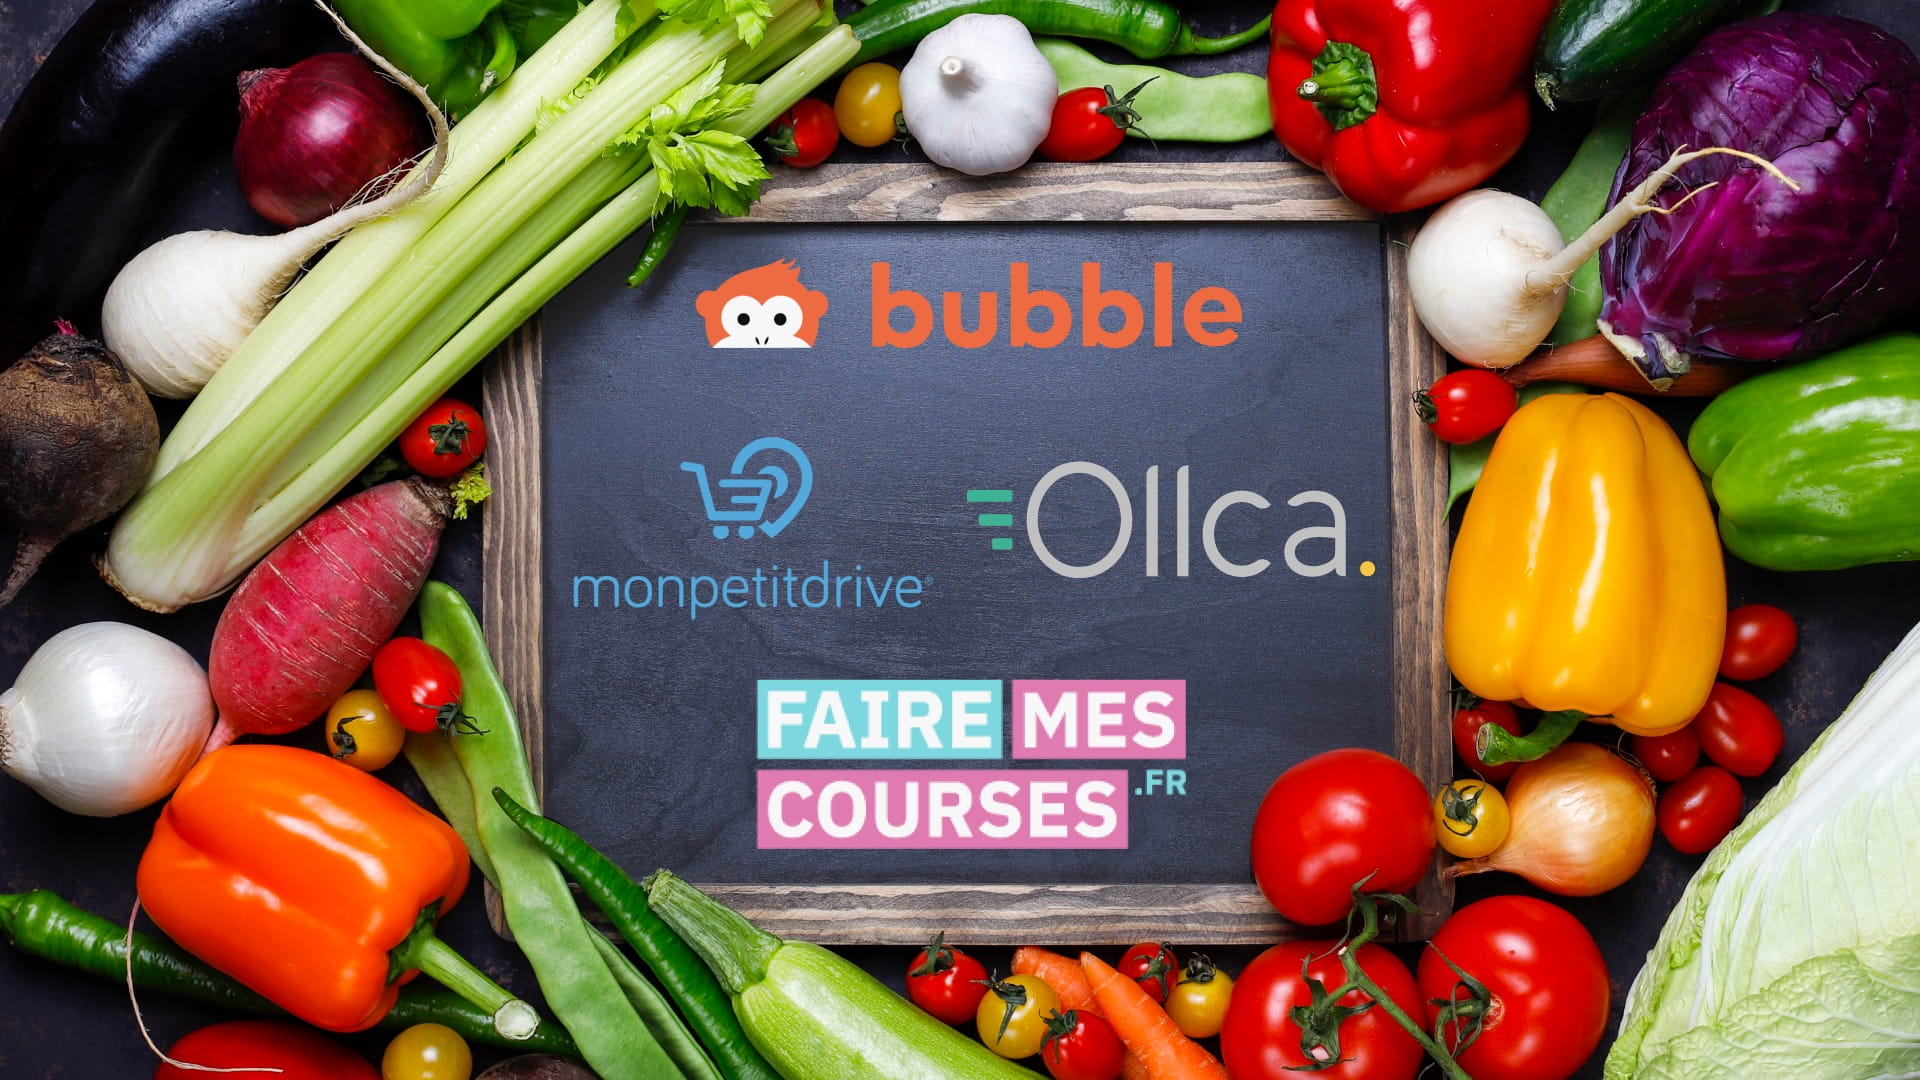 Logo Bubble, monpetitdrive, ollca et fairemescourses.fr sur une ardoise au milieu de fruits et légumes